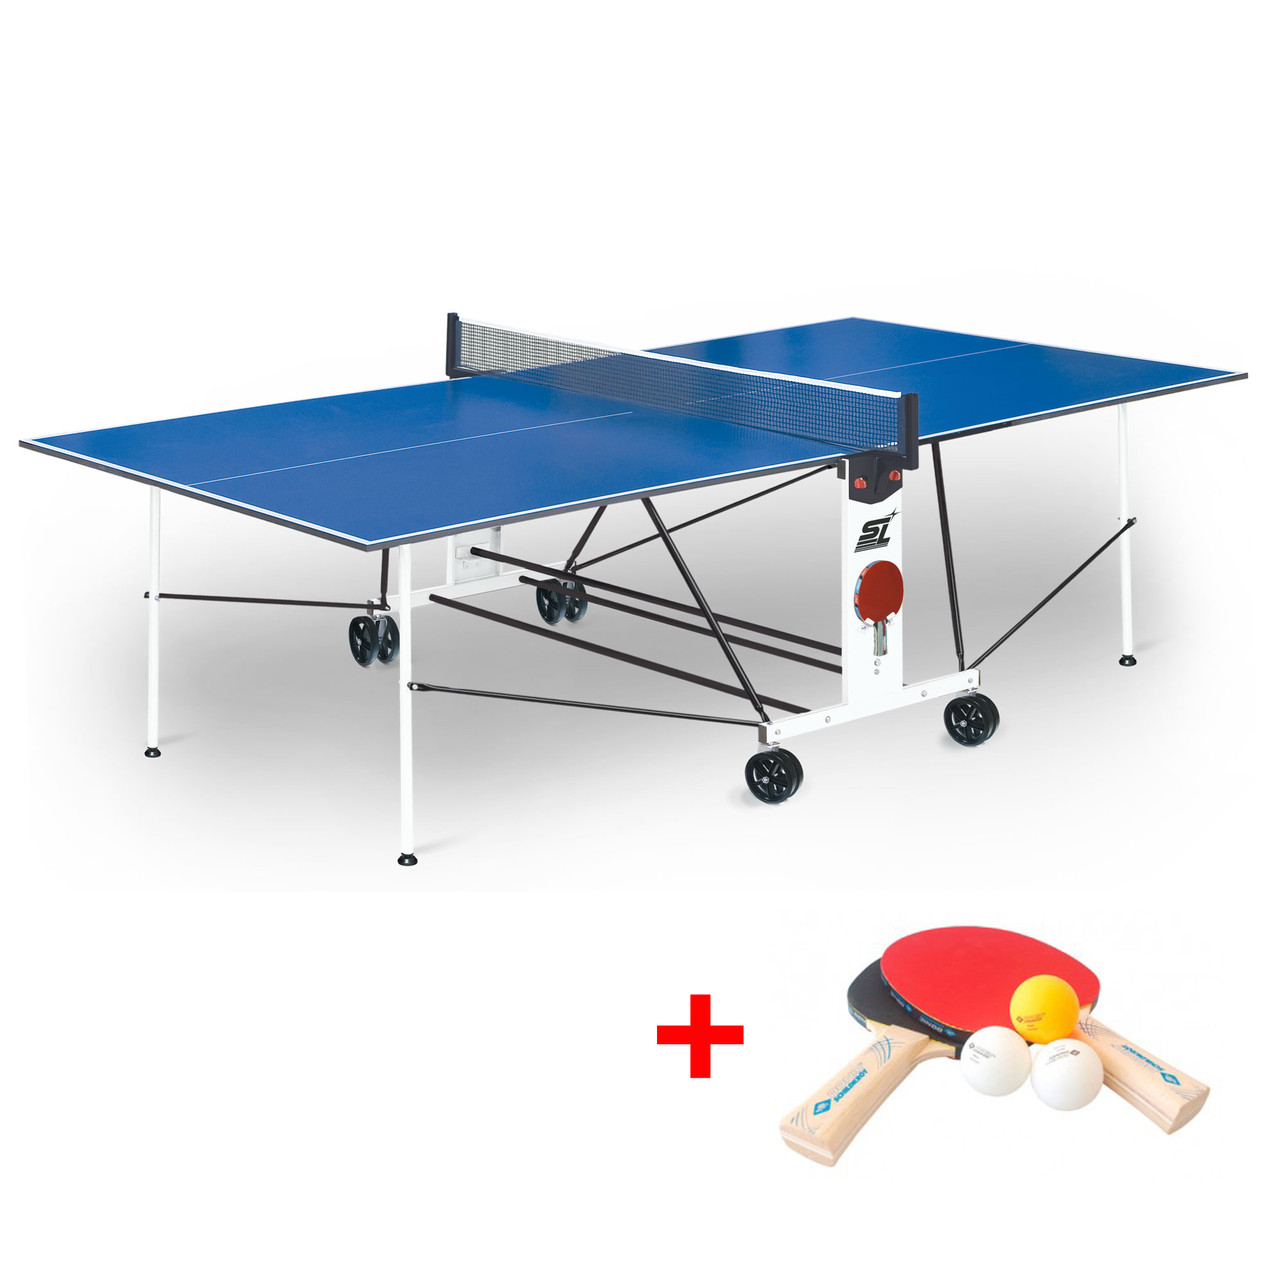 Теннисный стол Compact Light LX - усовершенствованная модель стола для использования в помещениях с сеткой